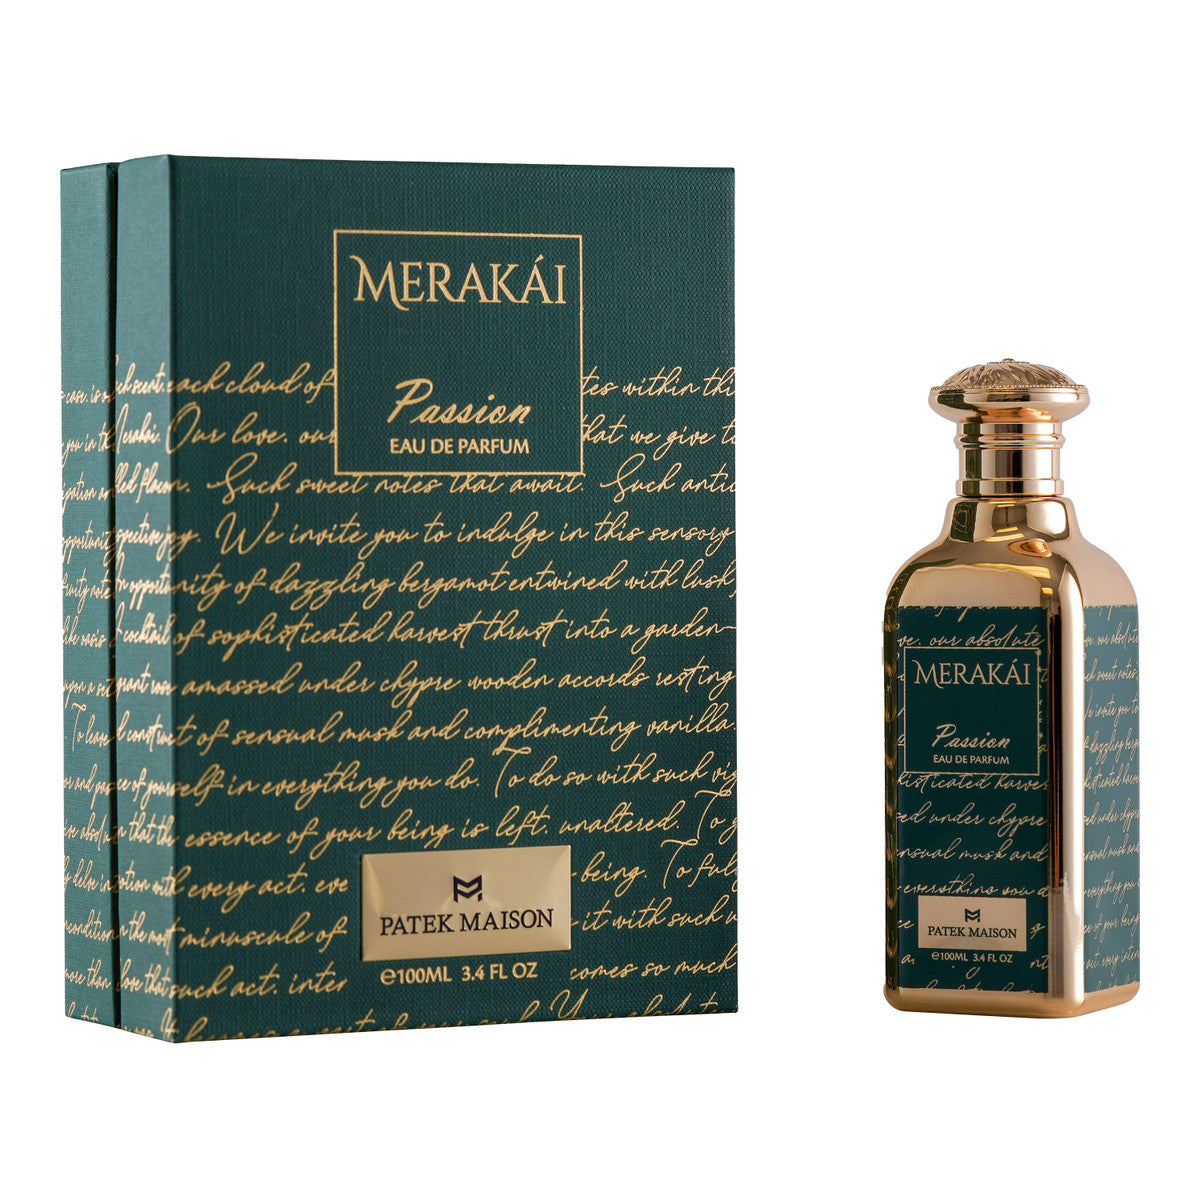 Patek Maison Merakai Passion  Eau de Parfum 3.4 oz 100 ml